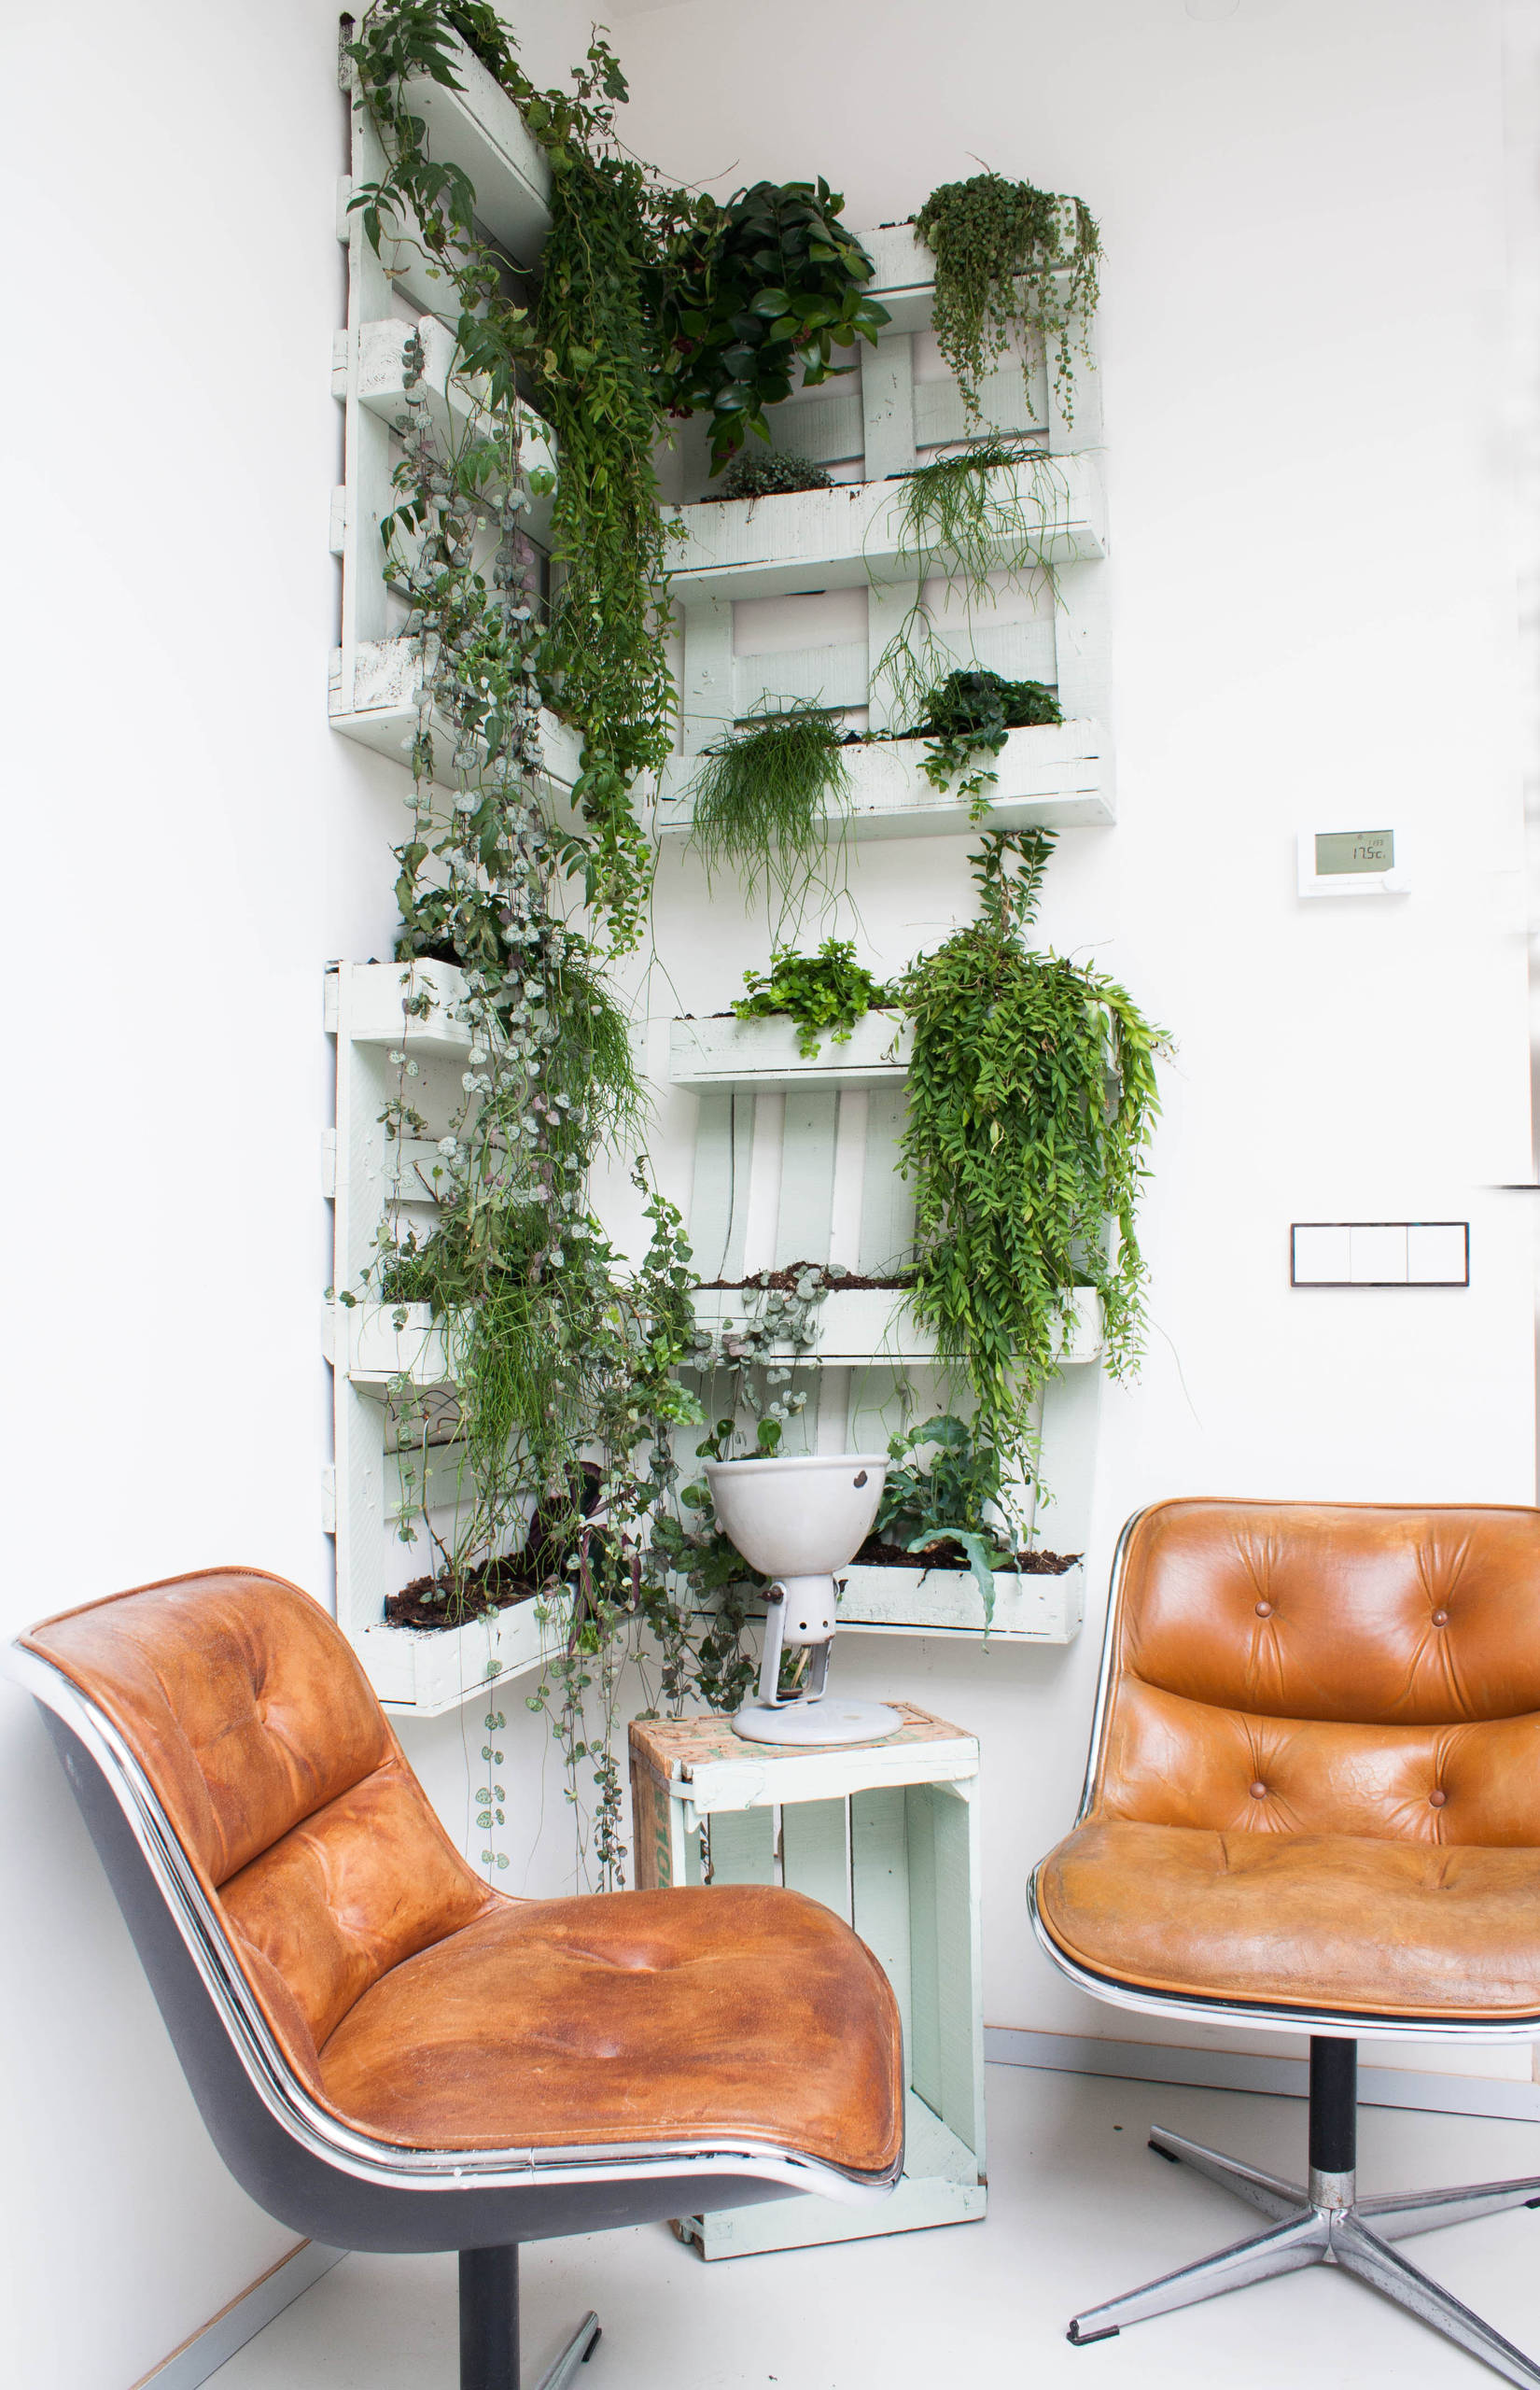 Efeu als Zimmerpflanze: Die Ivy League der Indoor-Dschungel